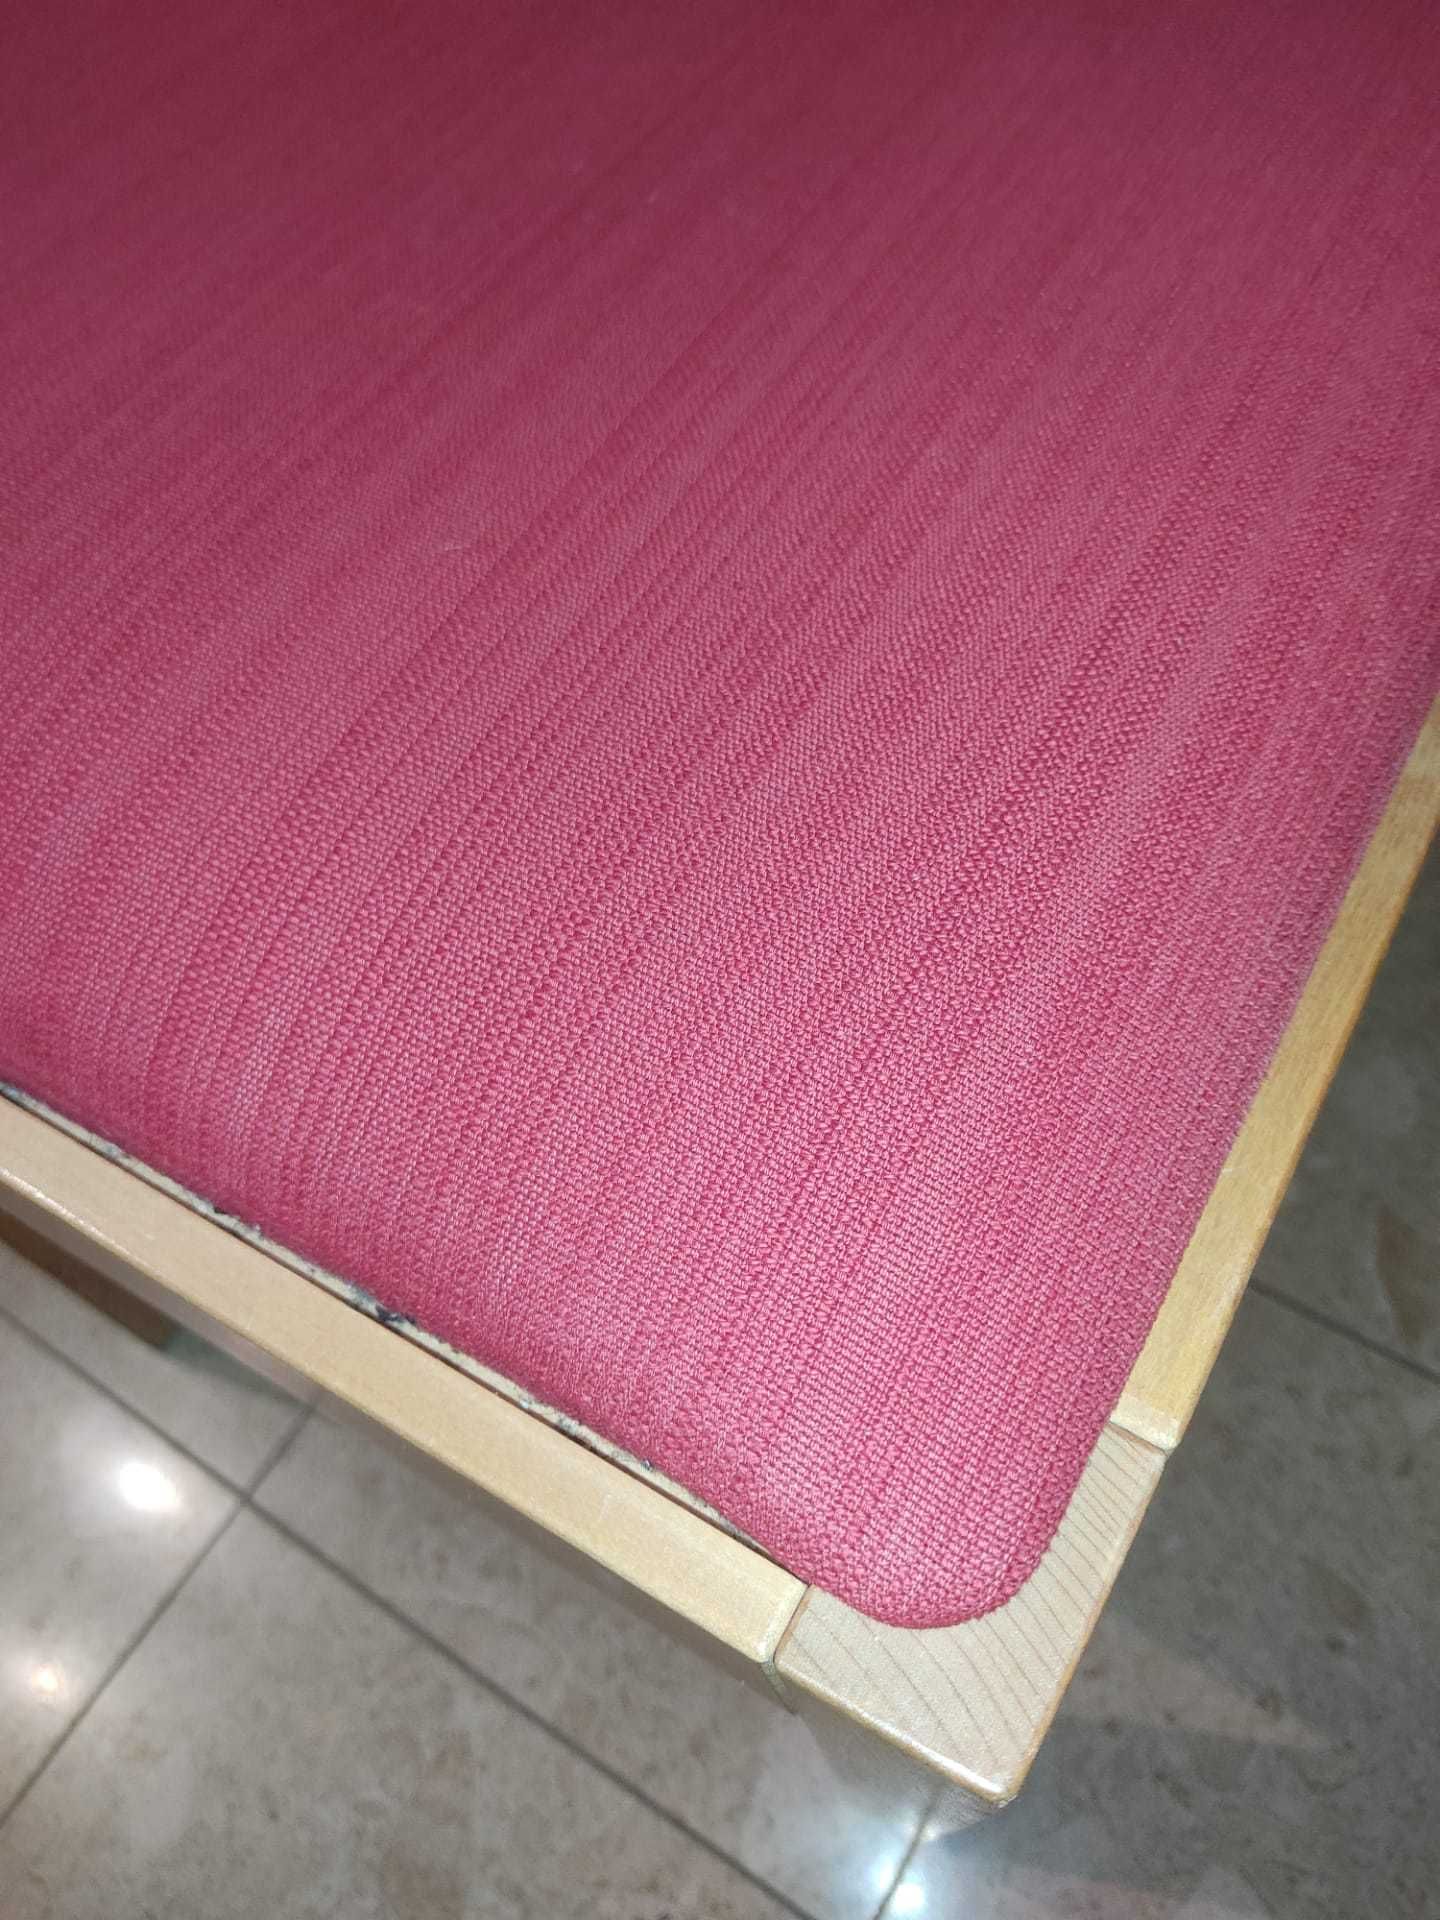 1 Cadeira IKEA (estofo em tecido vermelho)